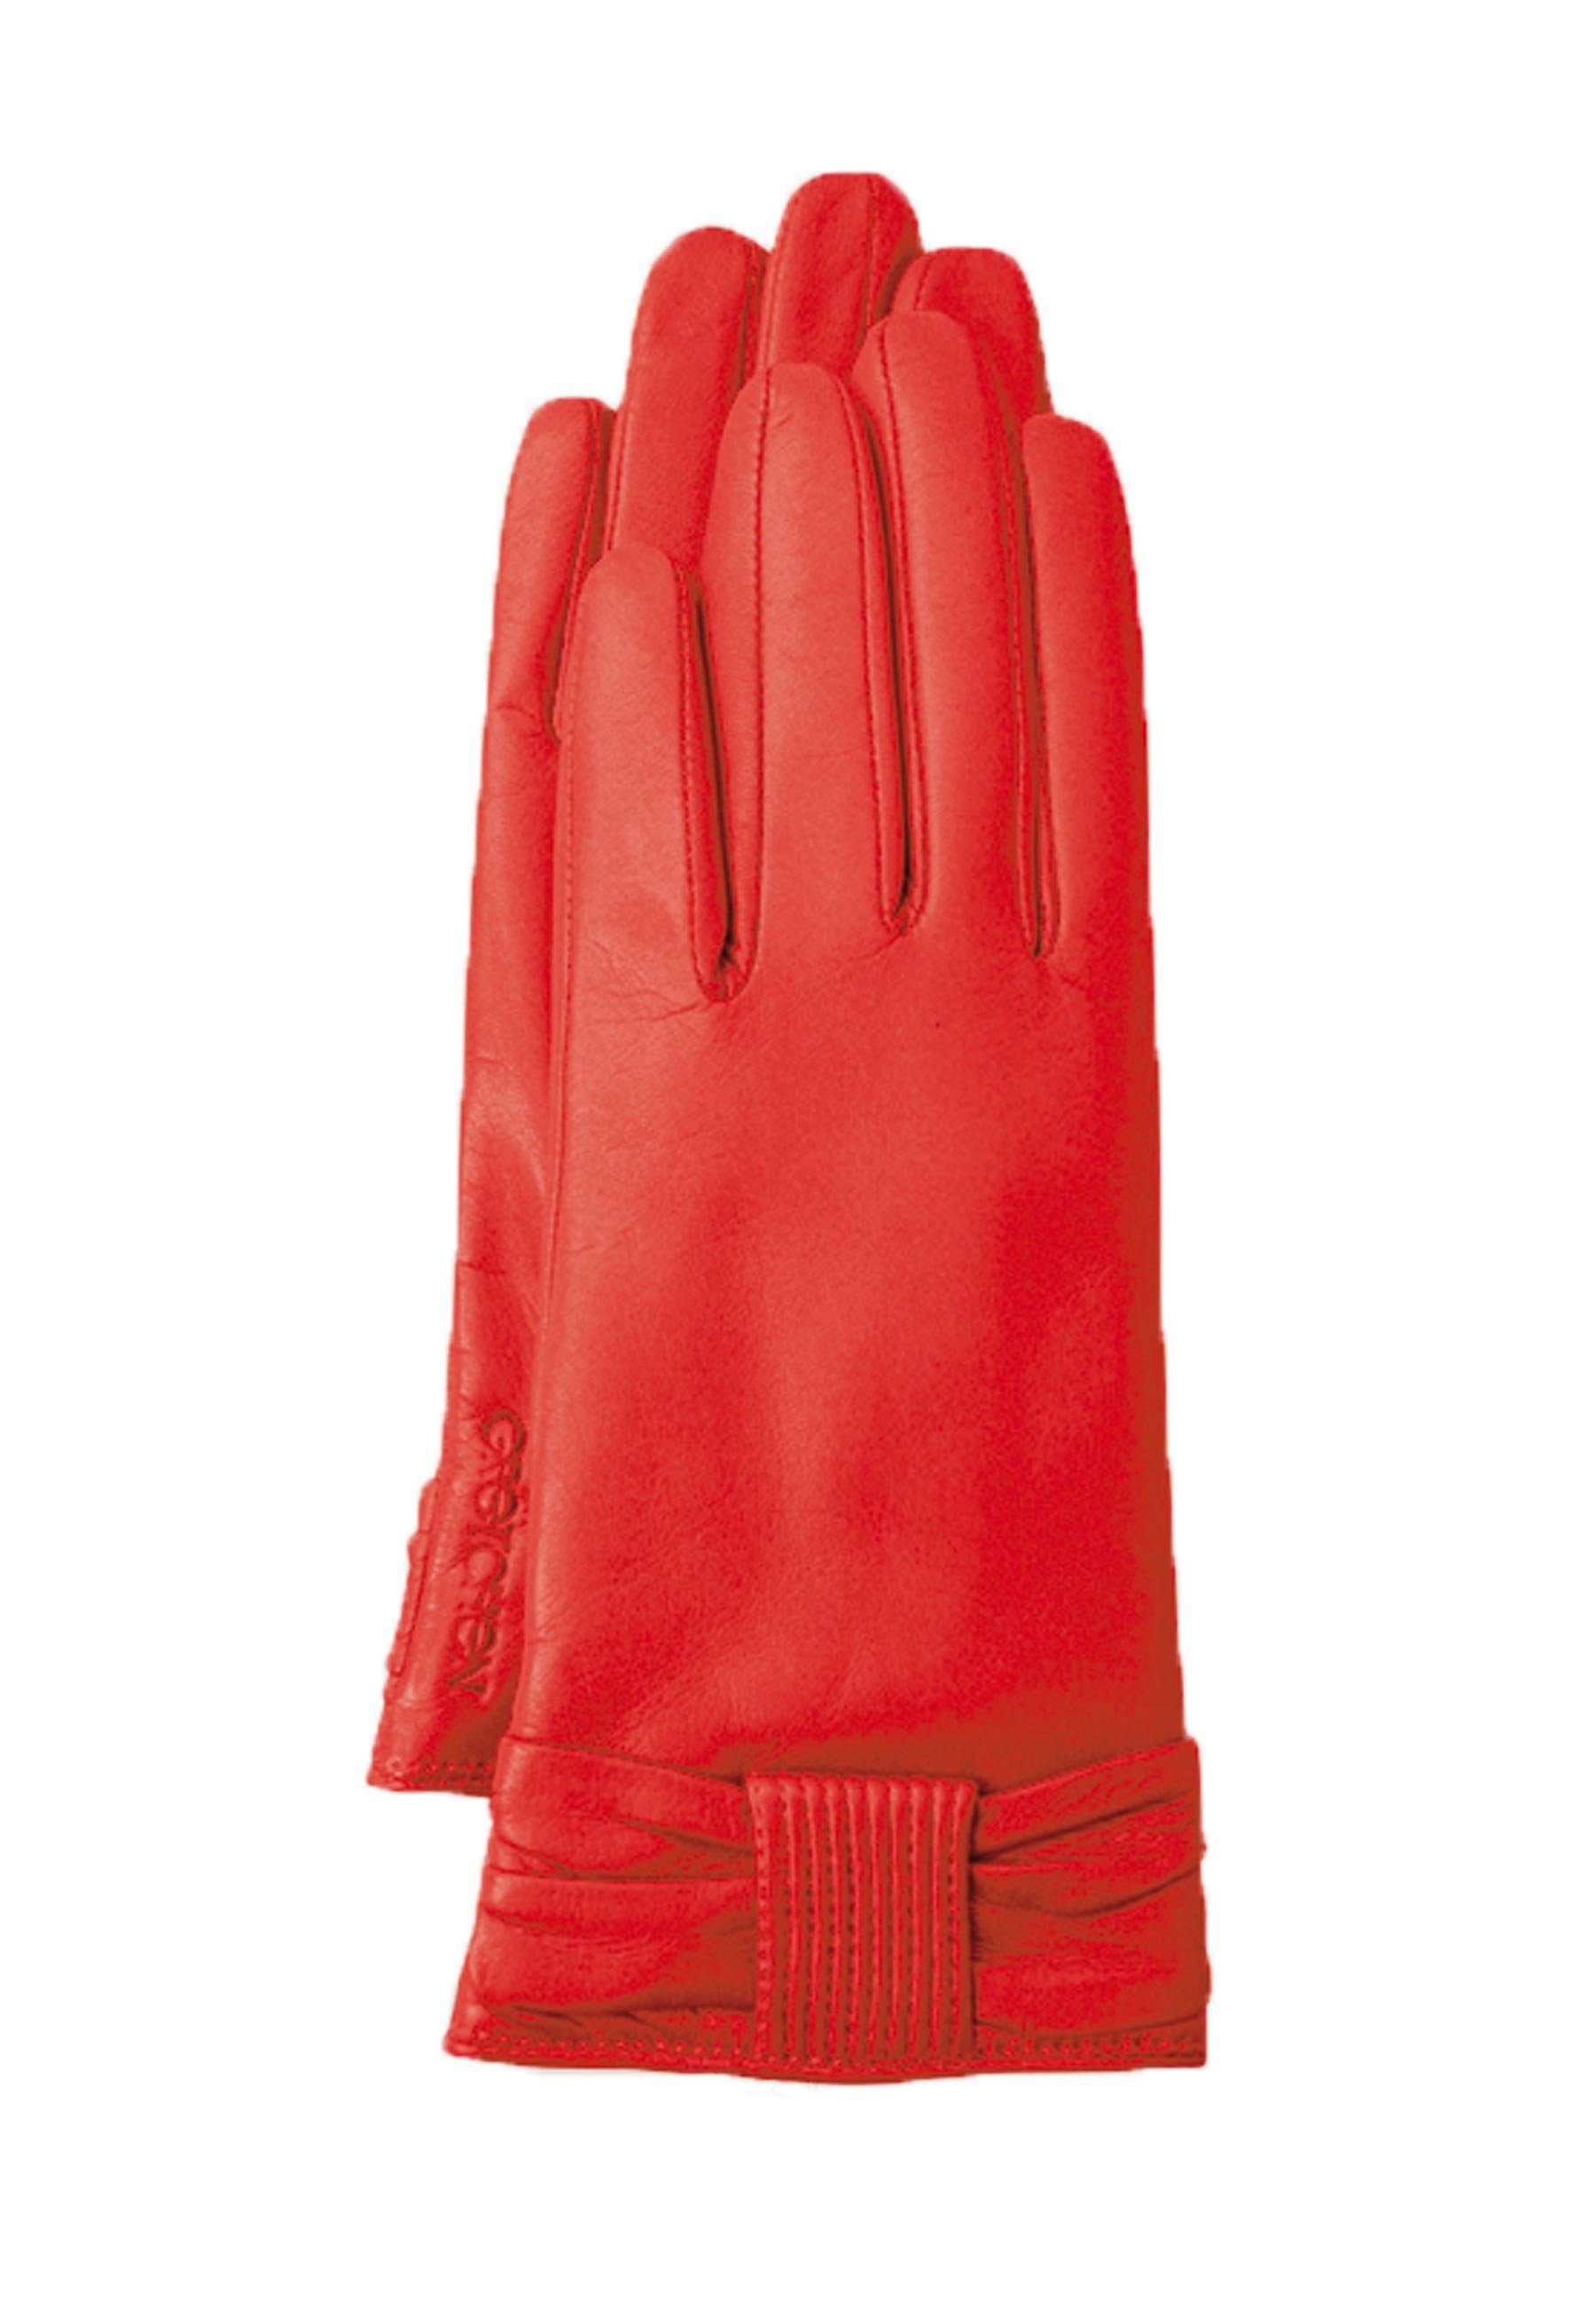 GRETCHEN Lederhandschuhe mit kuscheligem Kaschmir-Futter Gloves Bow rot-rot